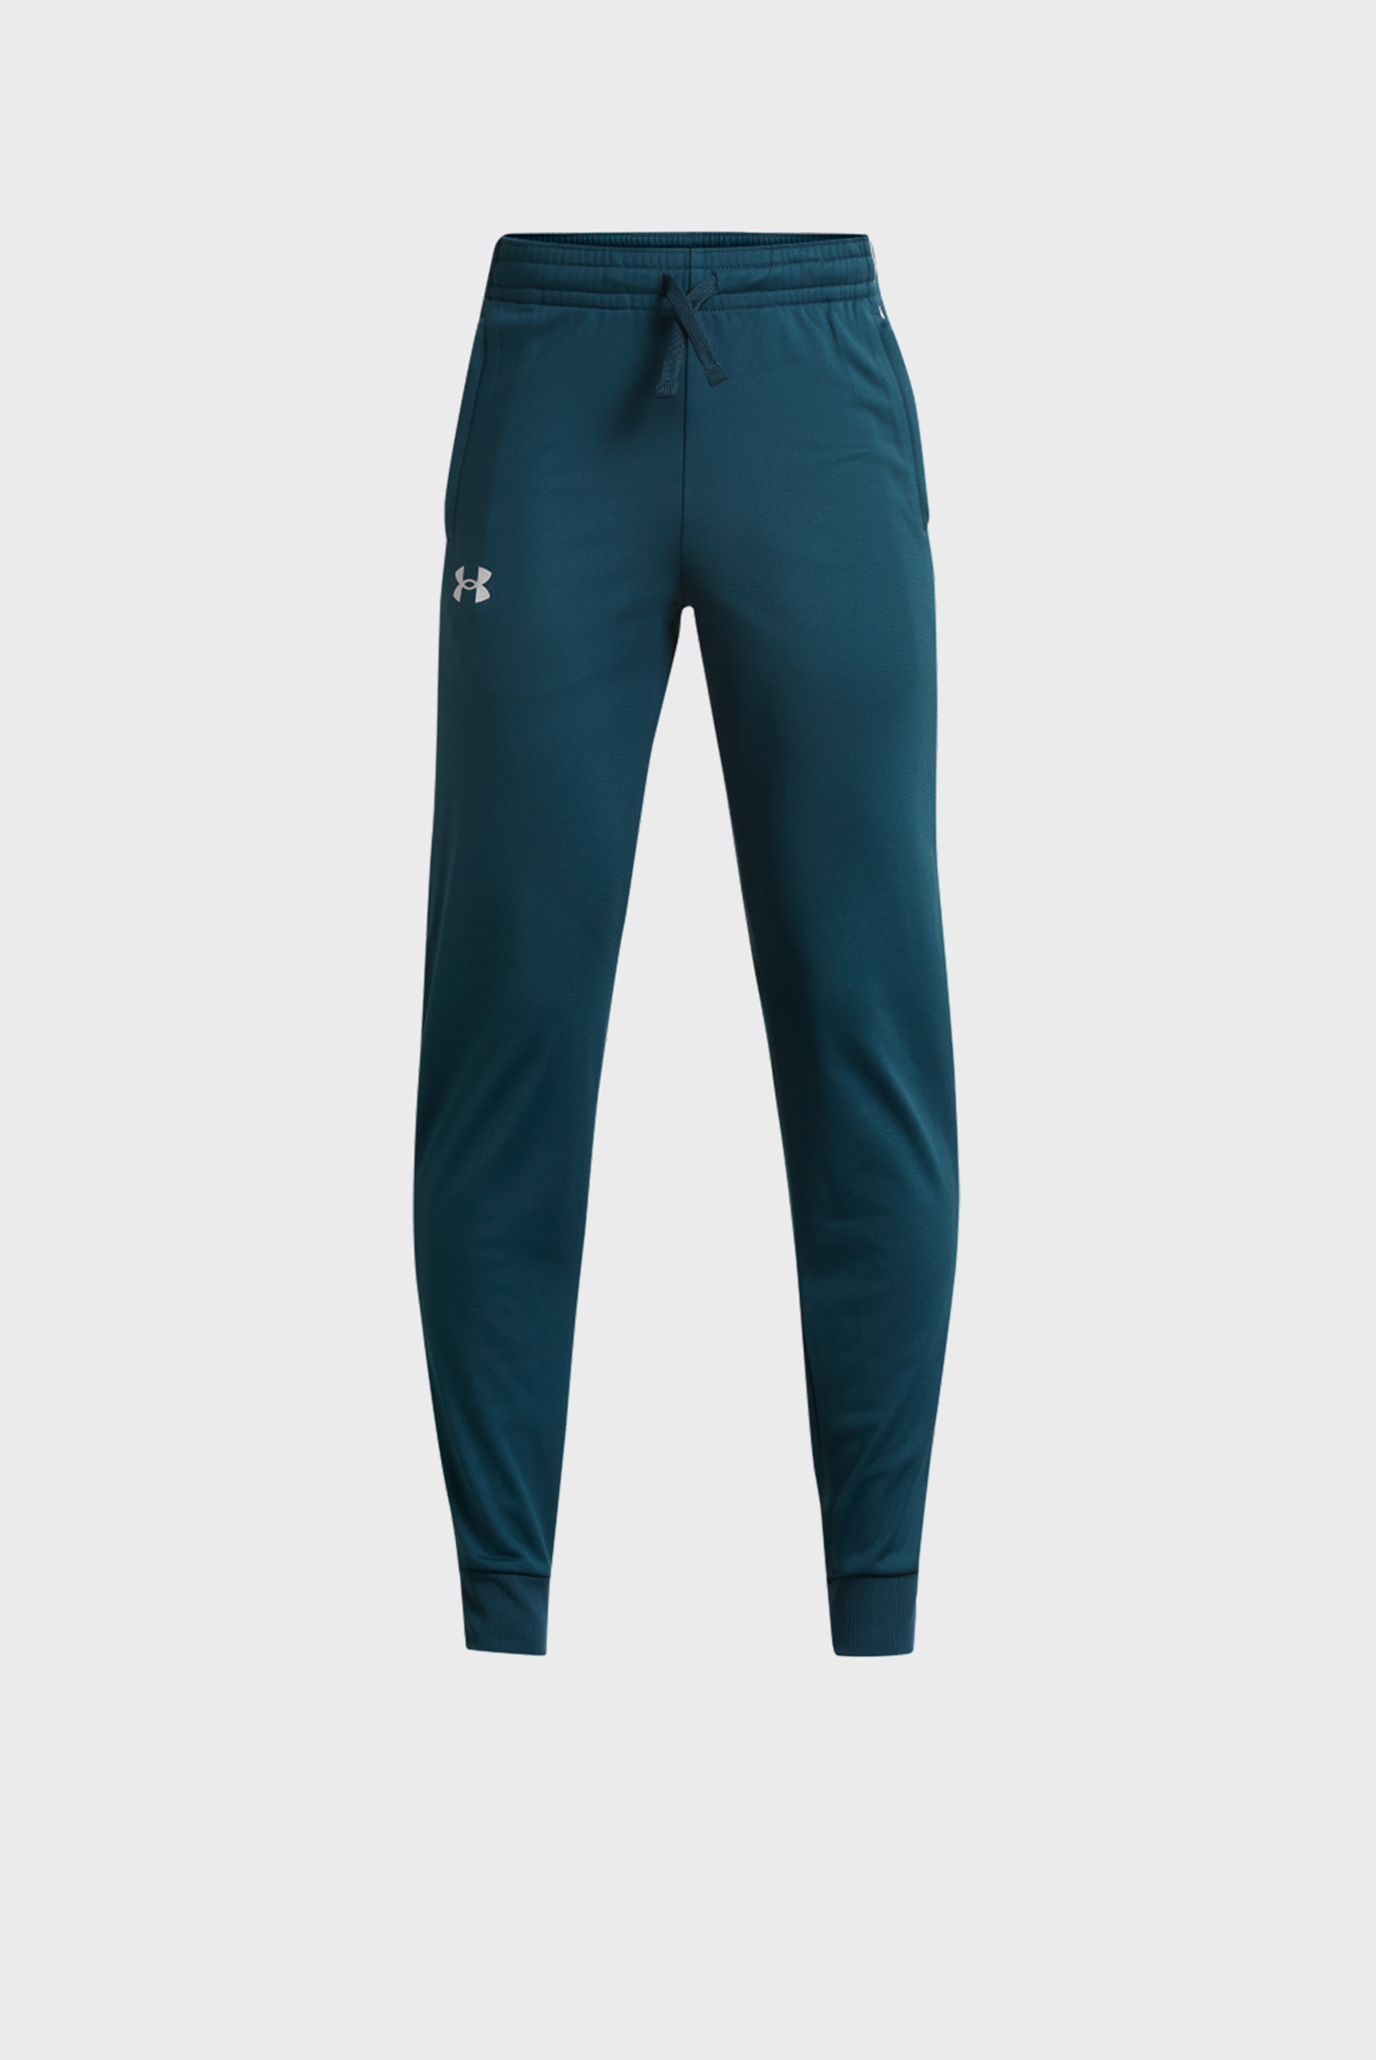 Детские синие спортивные брюки UA Pennant 2.0 Pants 1